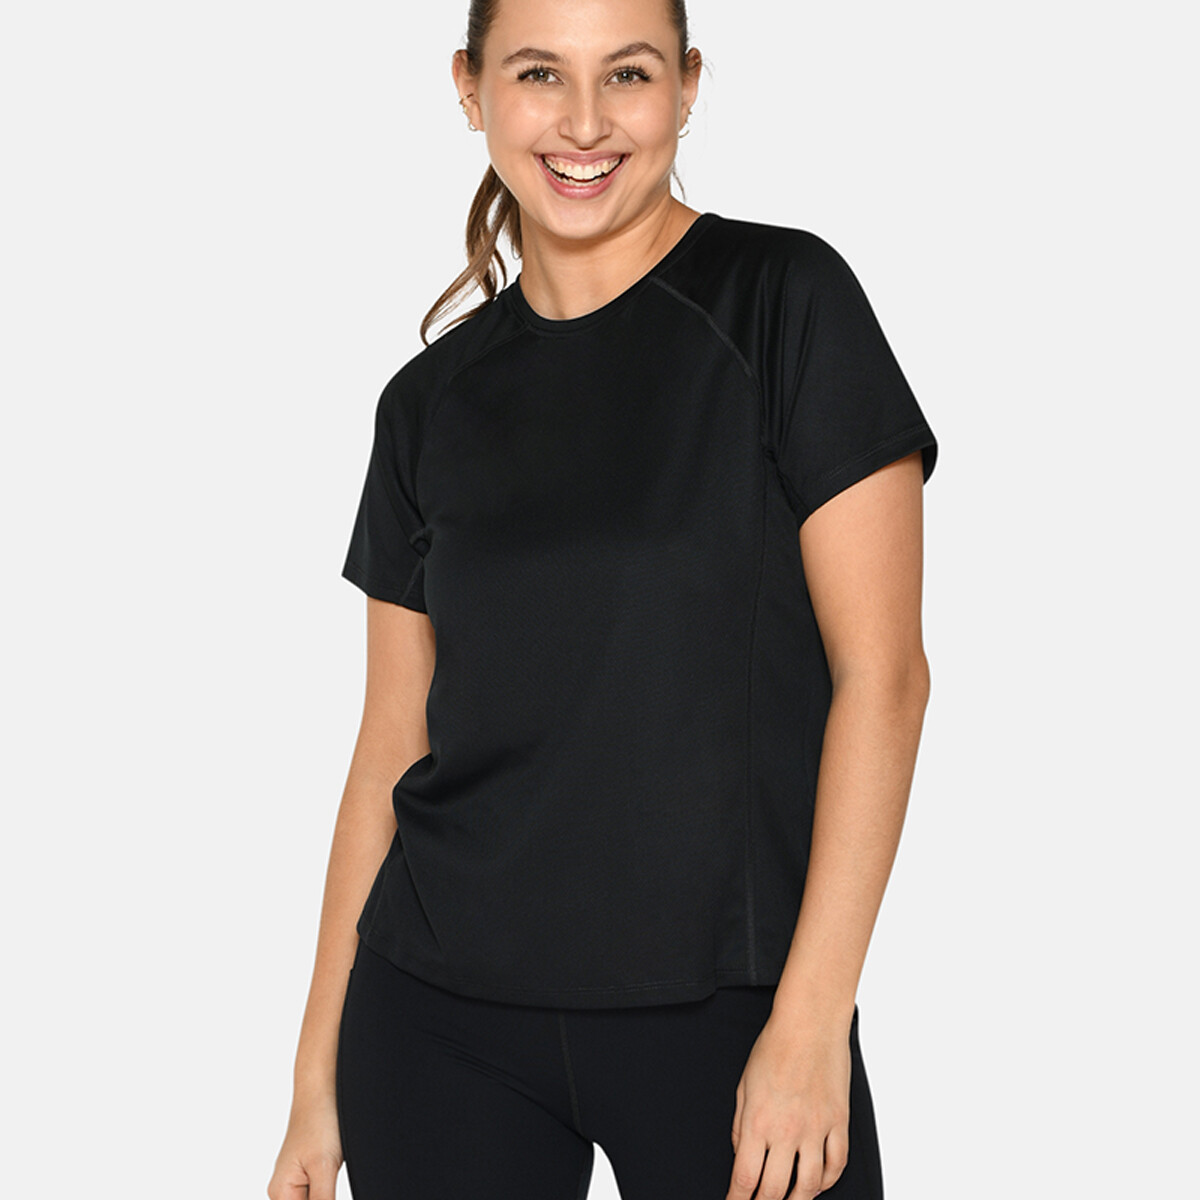 Se Zebdia Women Sports T-shirt, Farve: Sort, Størrelse: S, Dame hos Netlingeri.dk